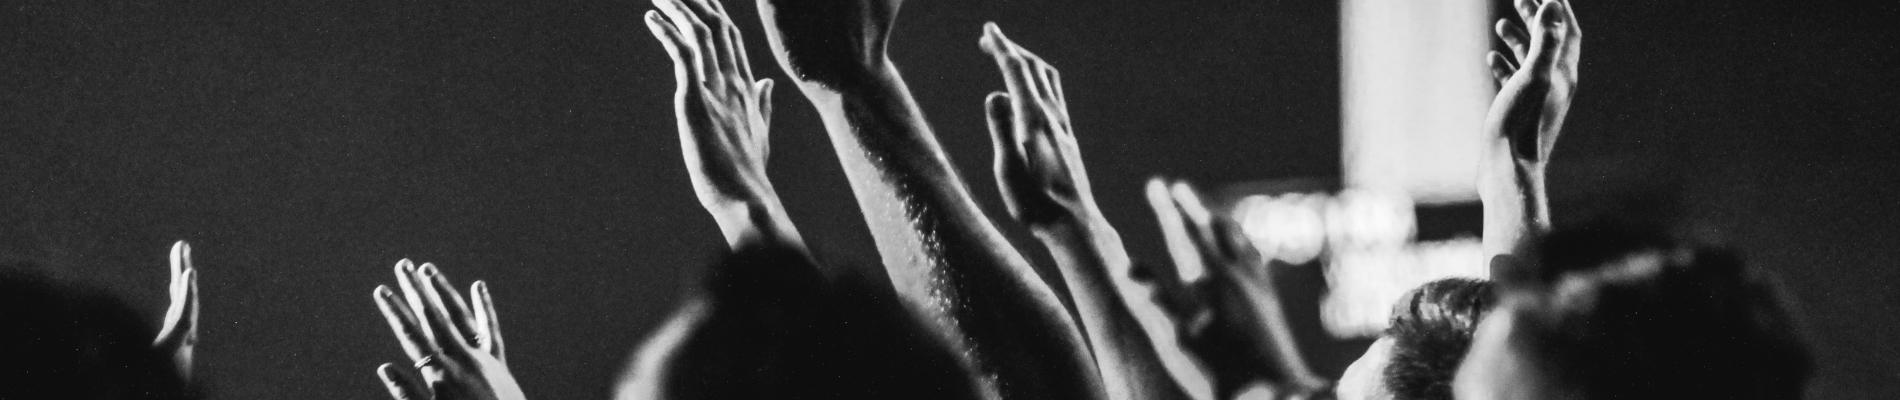 Groupe de membres levant la main en noir et blanc